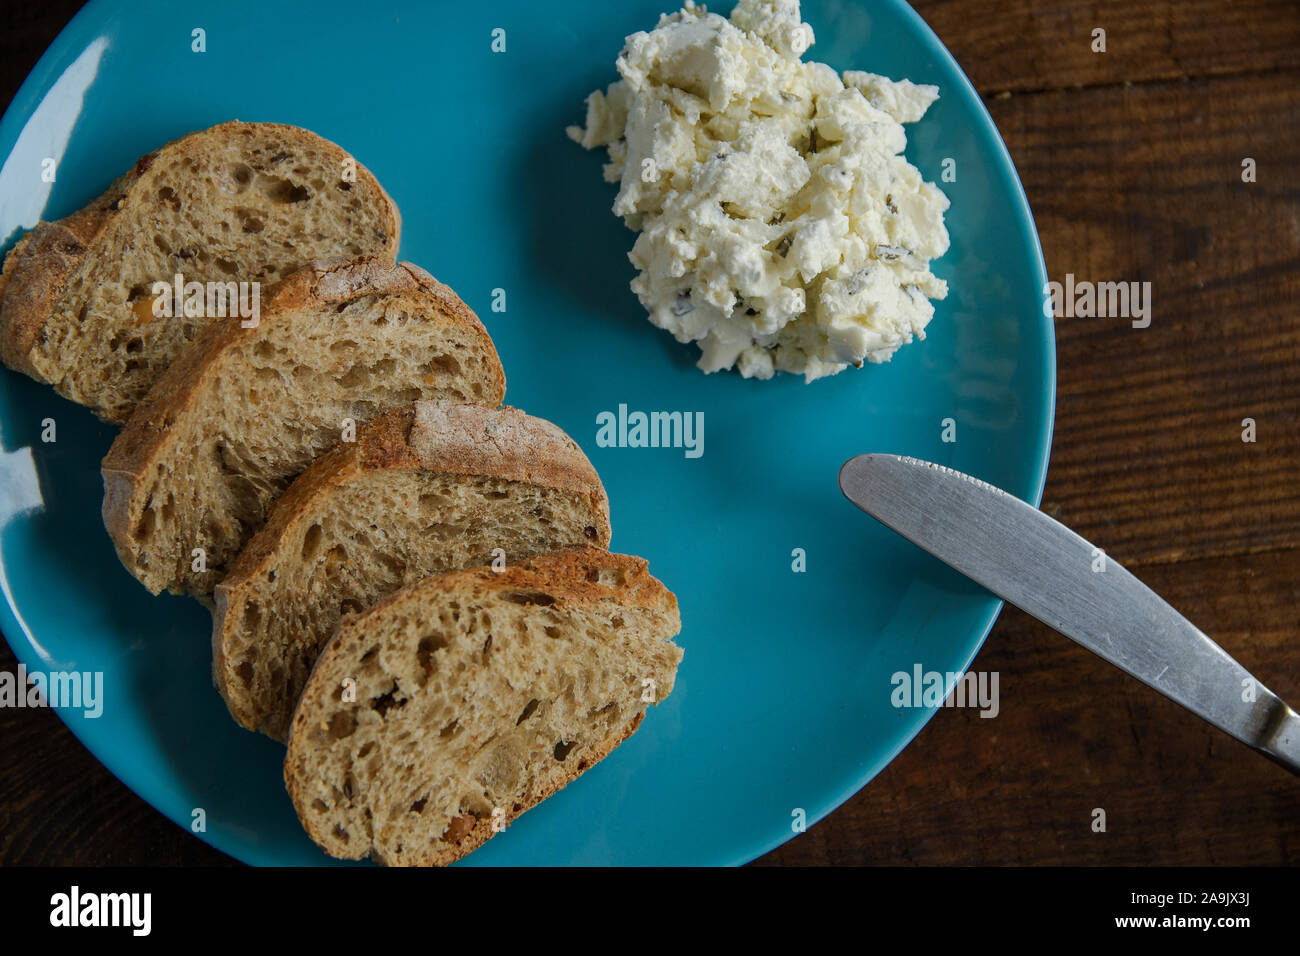 Frühstück Brot Toast auf einem blauen Schild mit Frischkäse Stockfoto